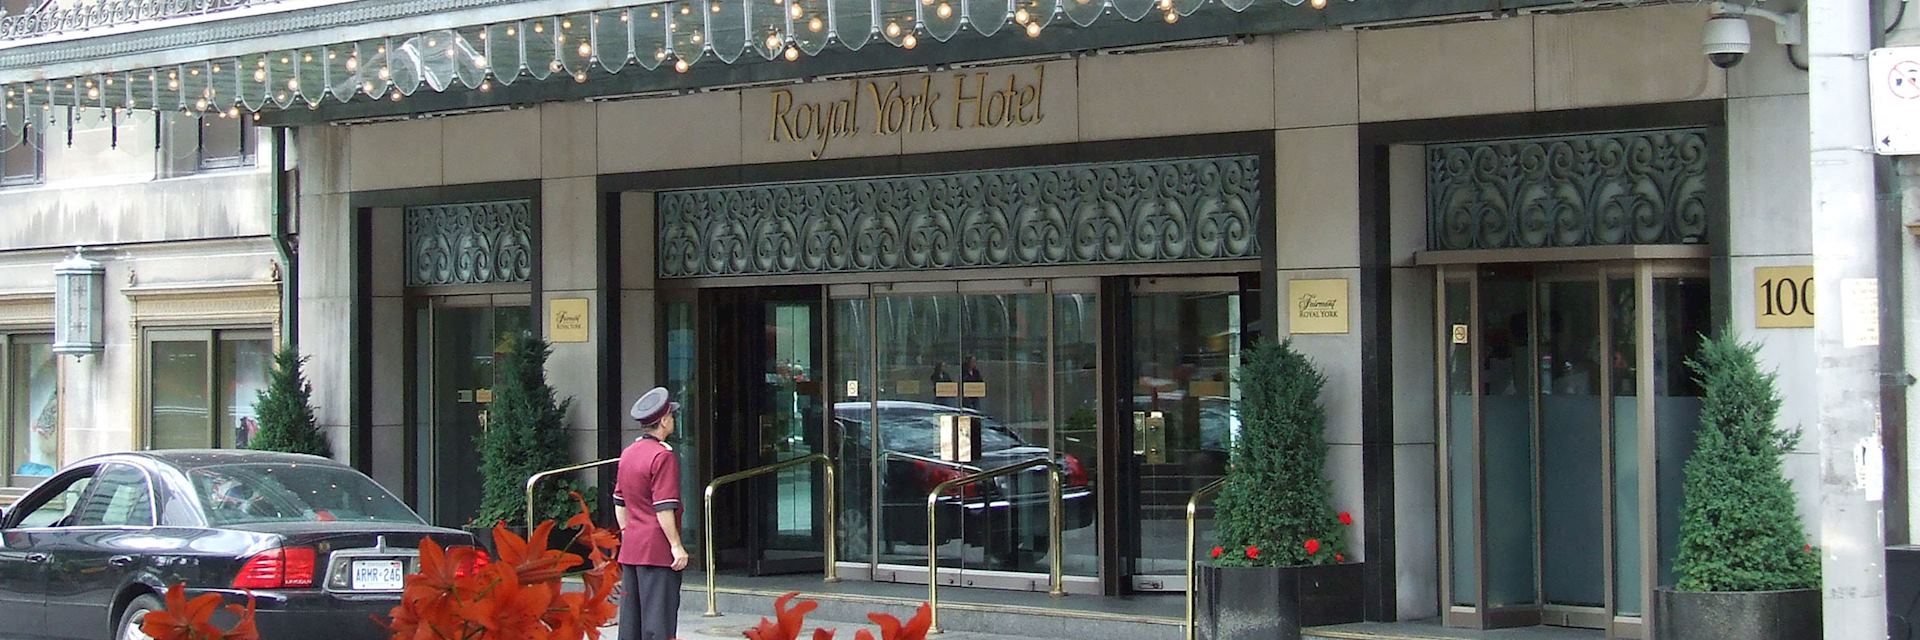 Fairmont Royal York, Toronto, Canada